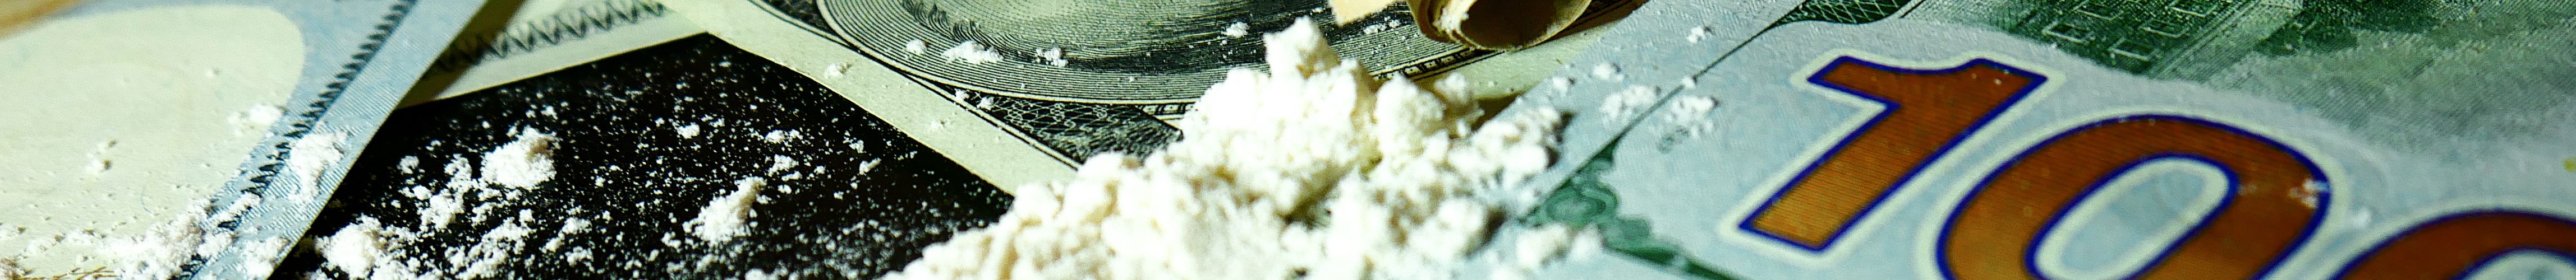 cocaine legalization